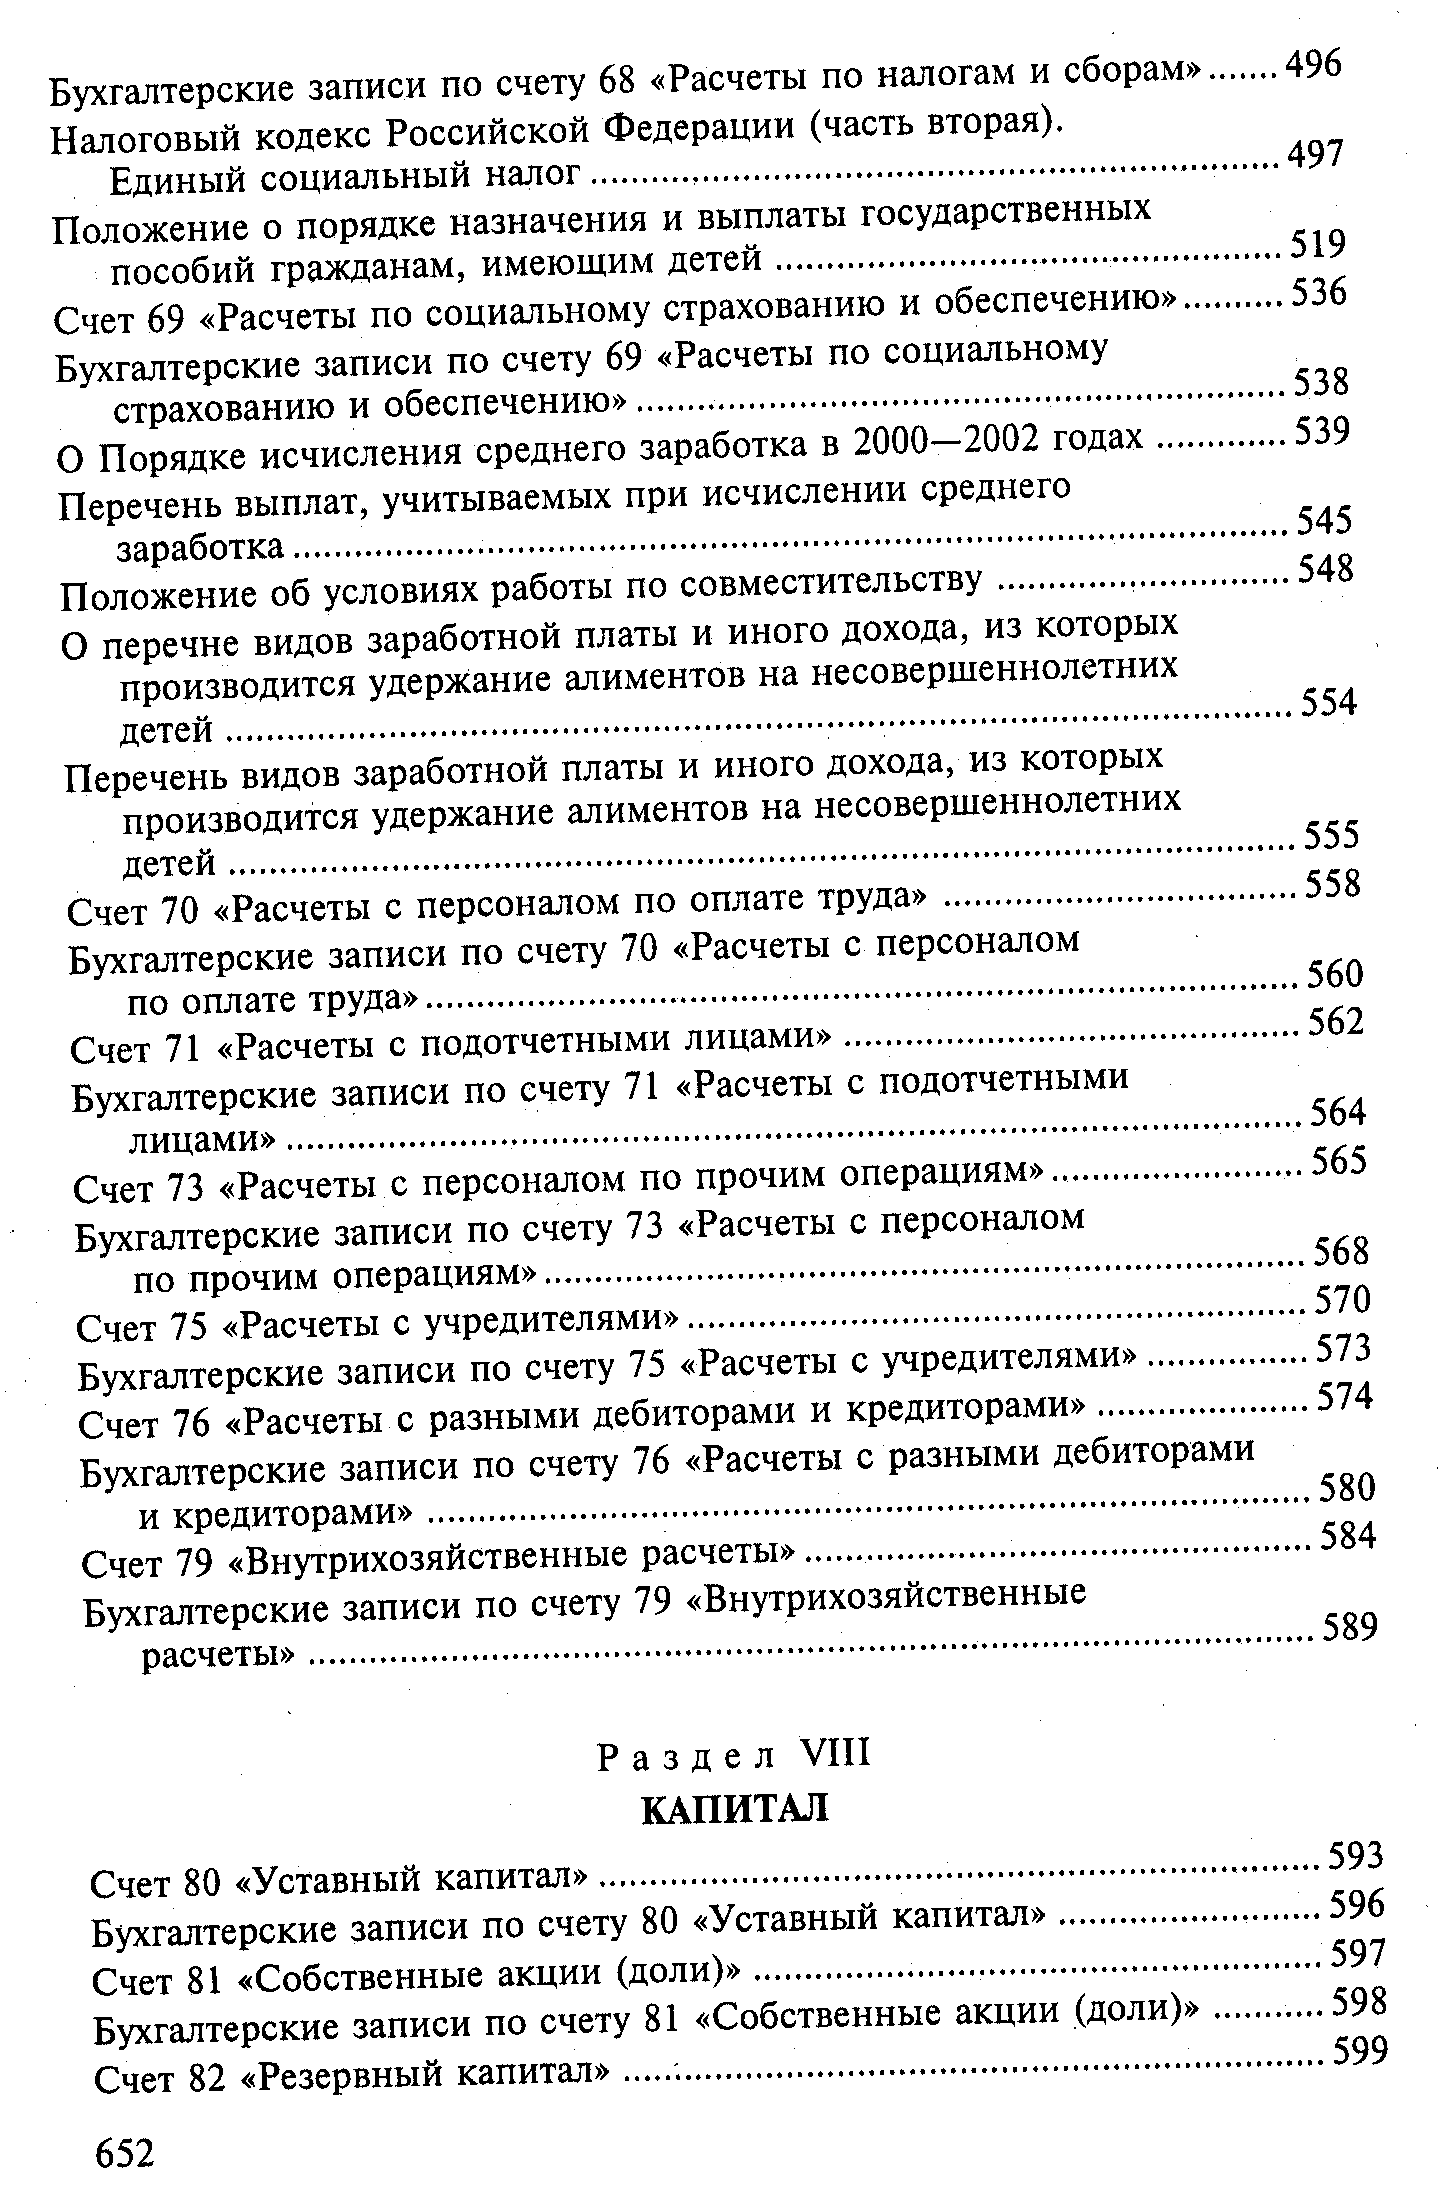 Налоговый кодекс Российской Федерации (часть вторая).
